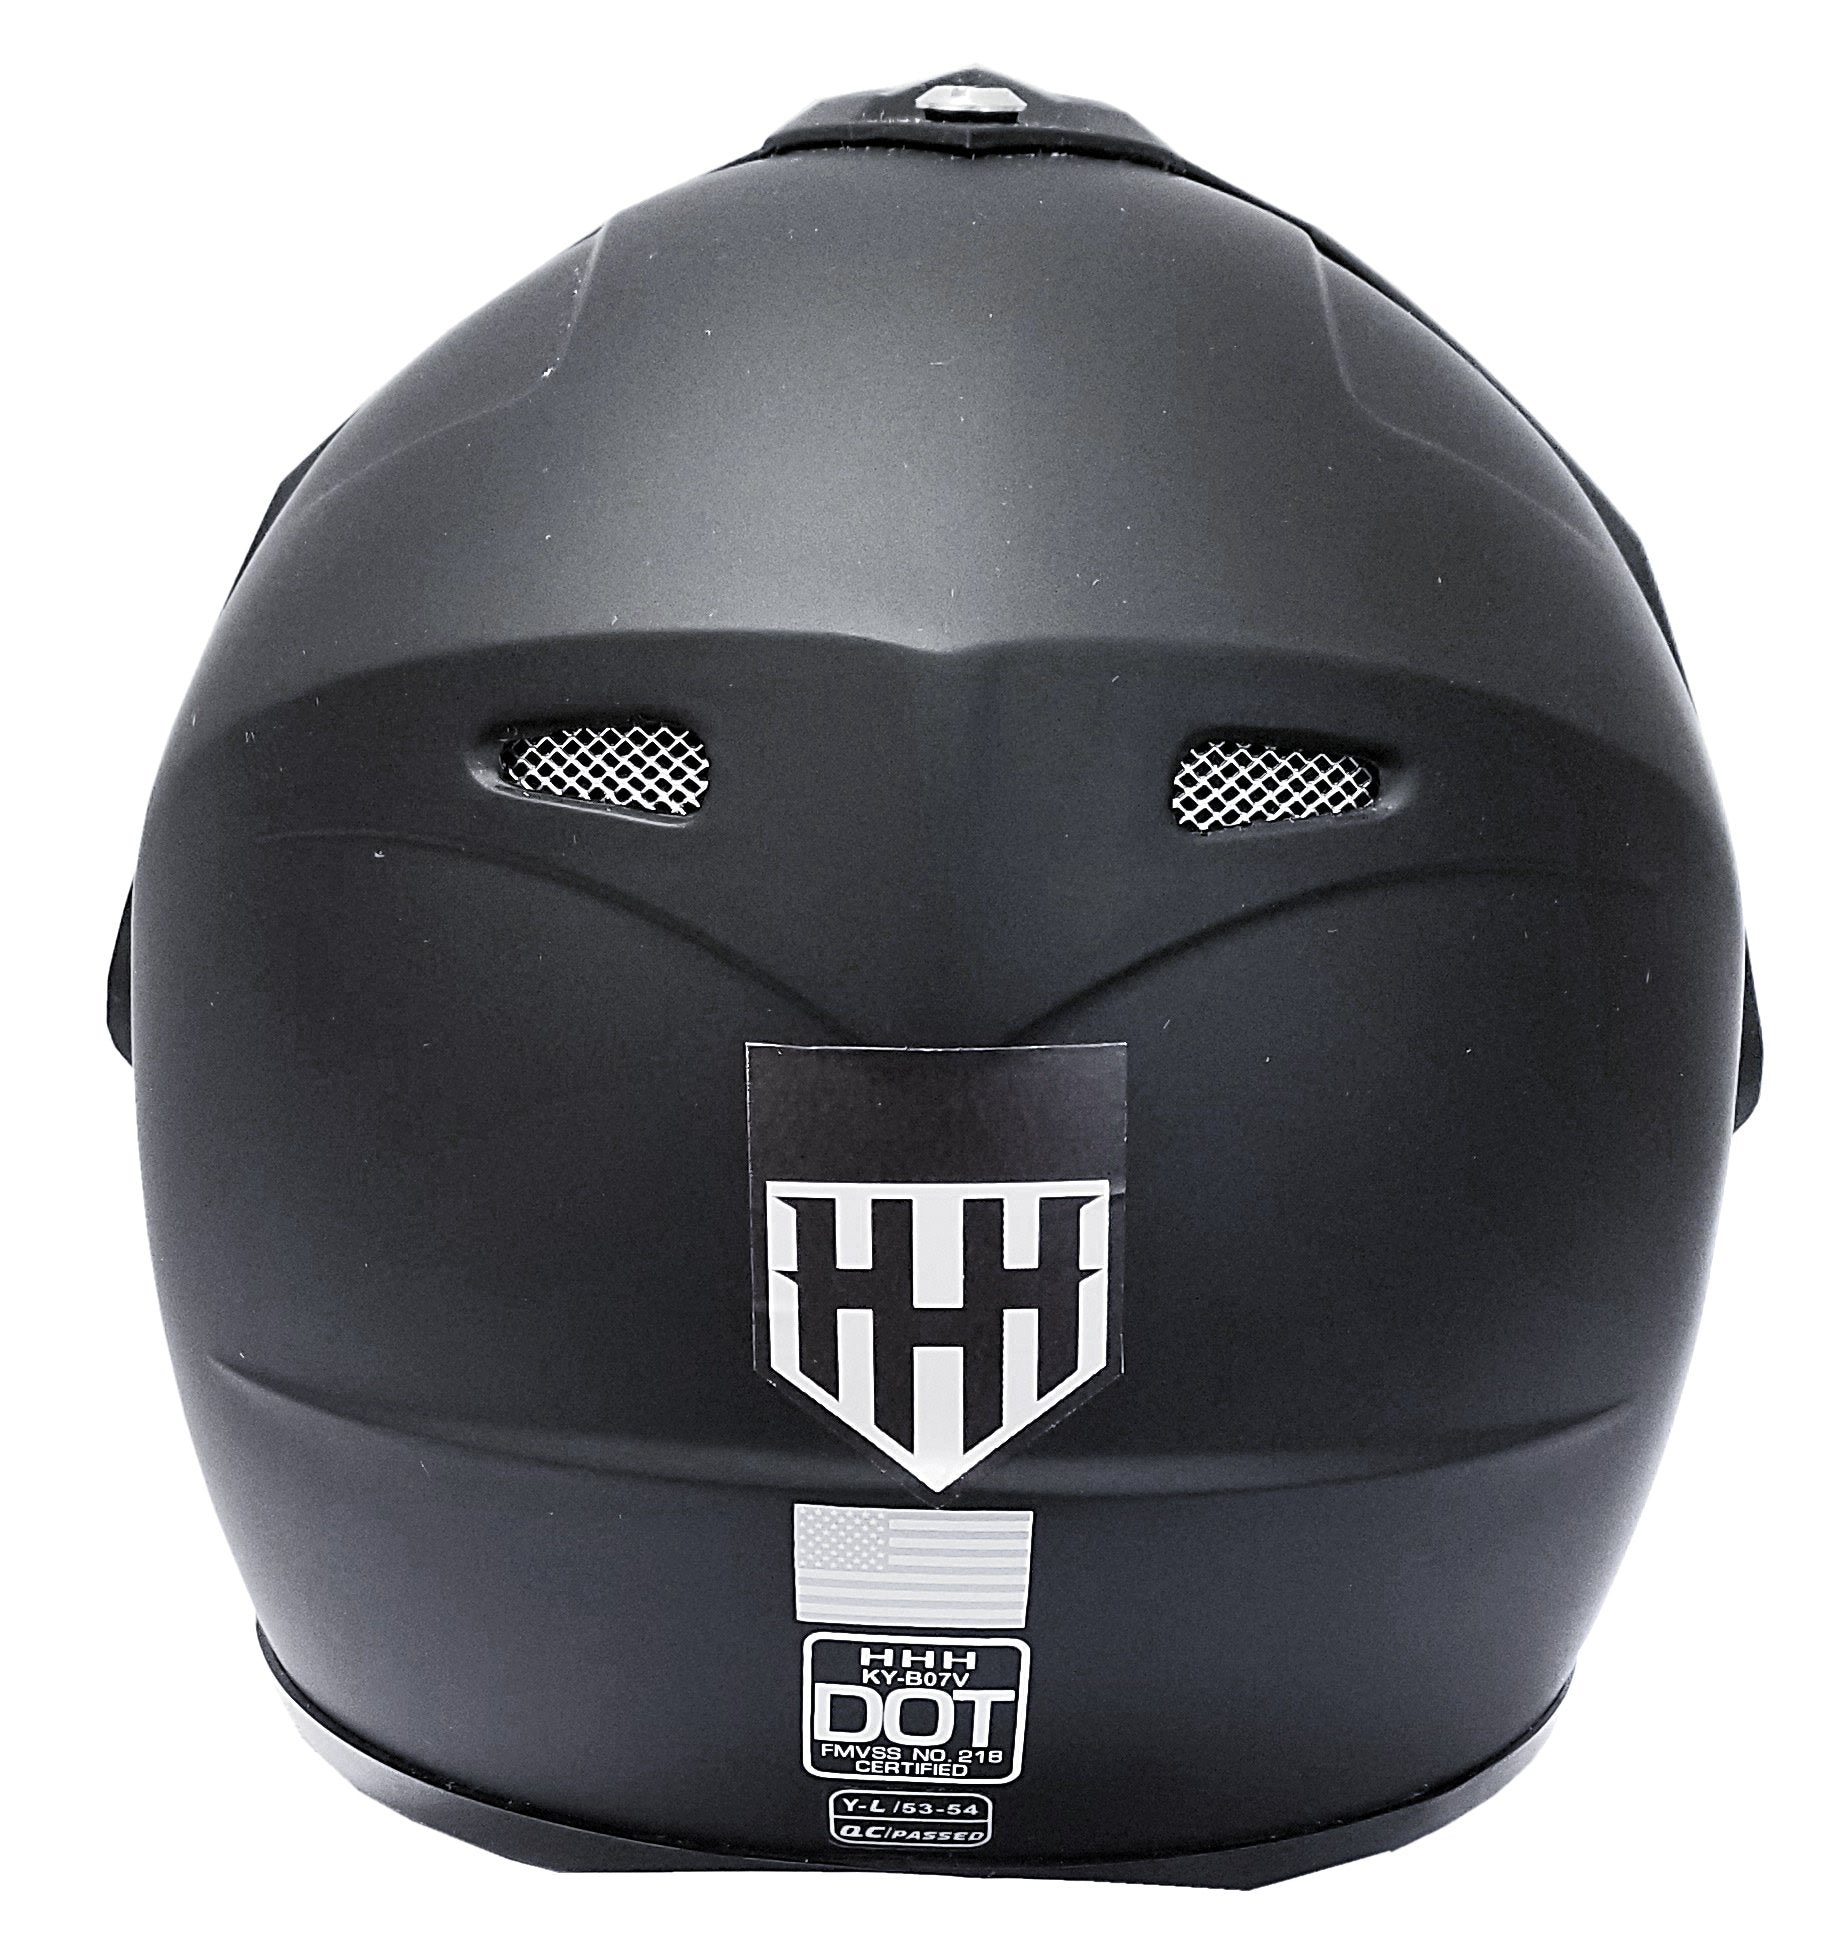 HHH DOT Youth & Kids Helmet for Dirtbike ATV Motocross MX Offroad Motorcyle Street bike Snowmobile Helmet with VISOR-Black-USA